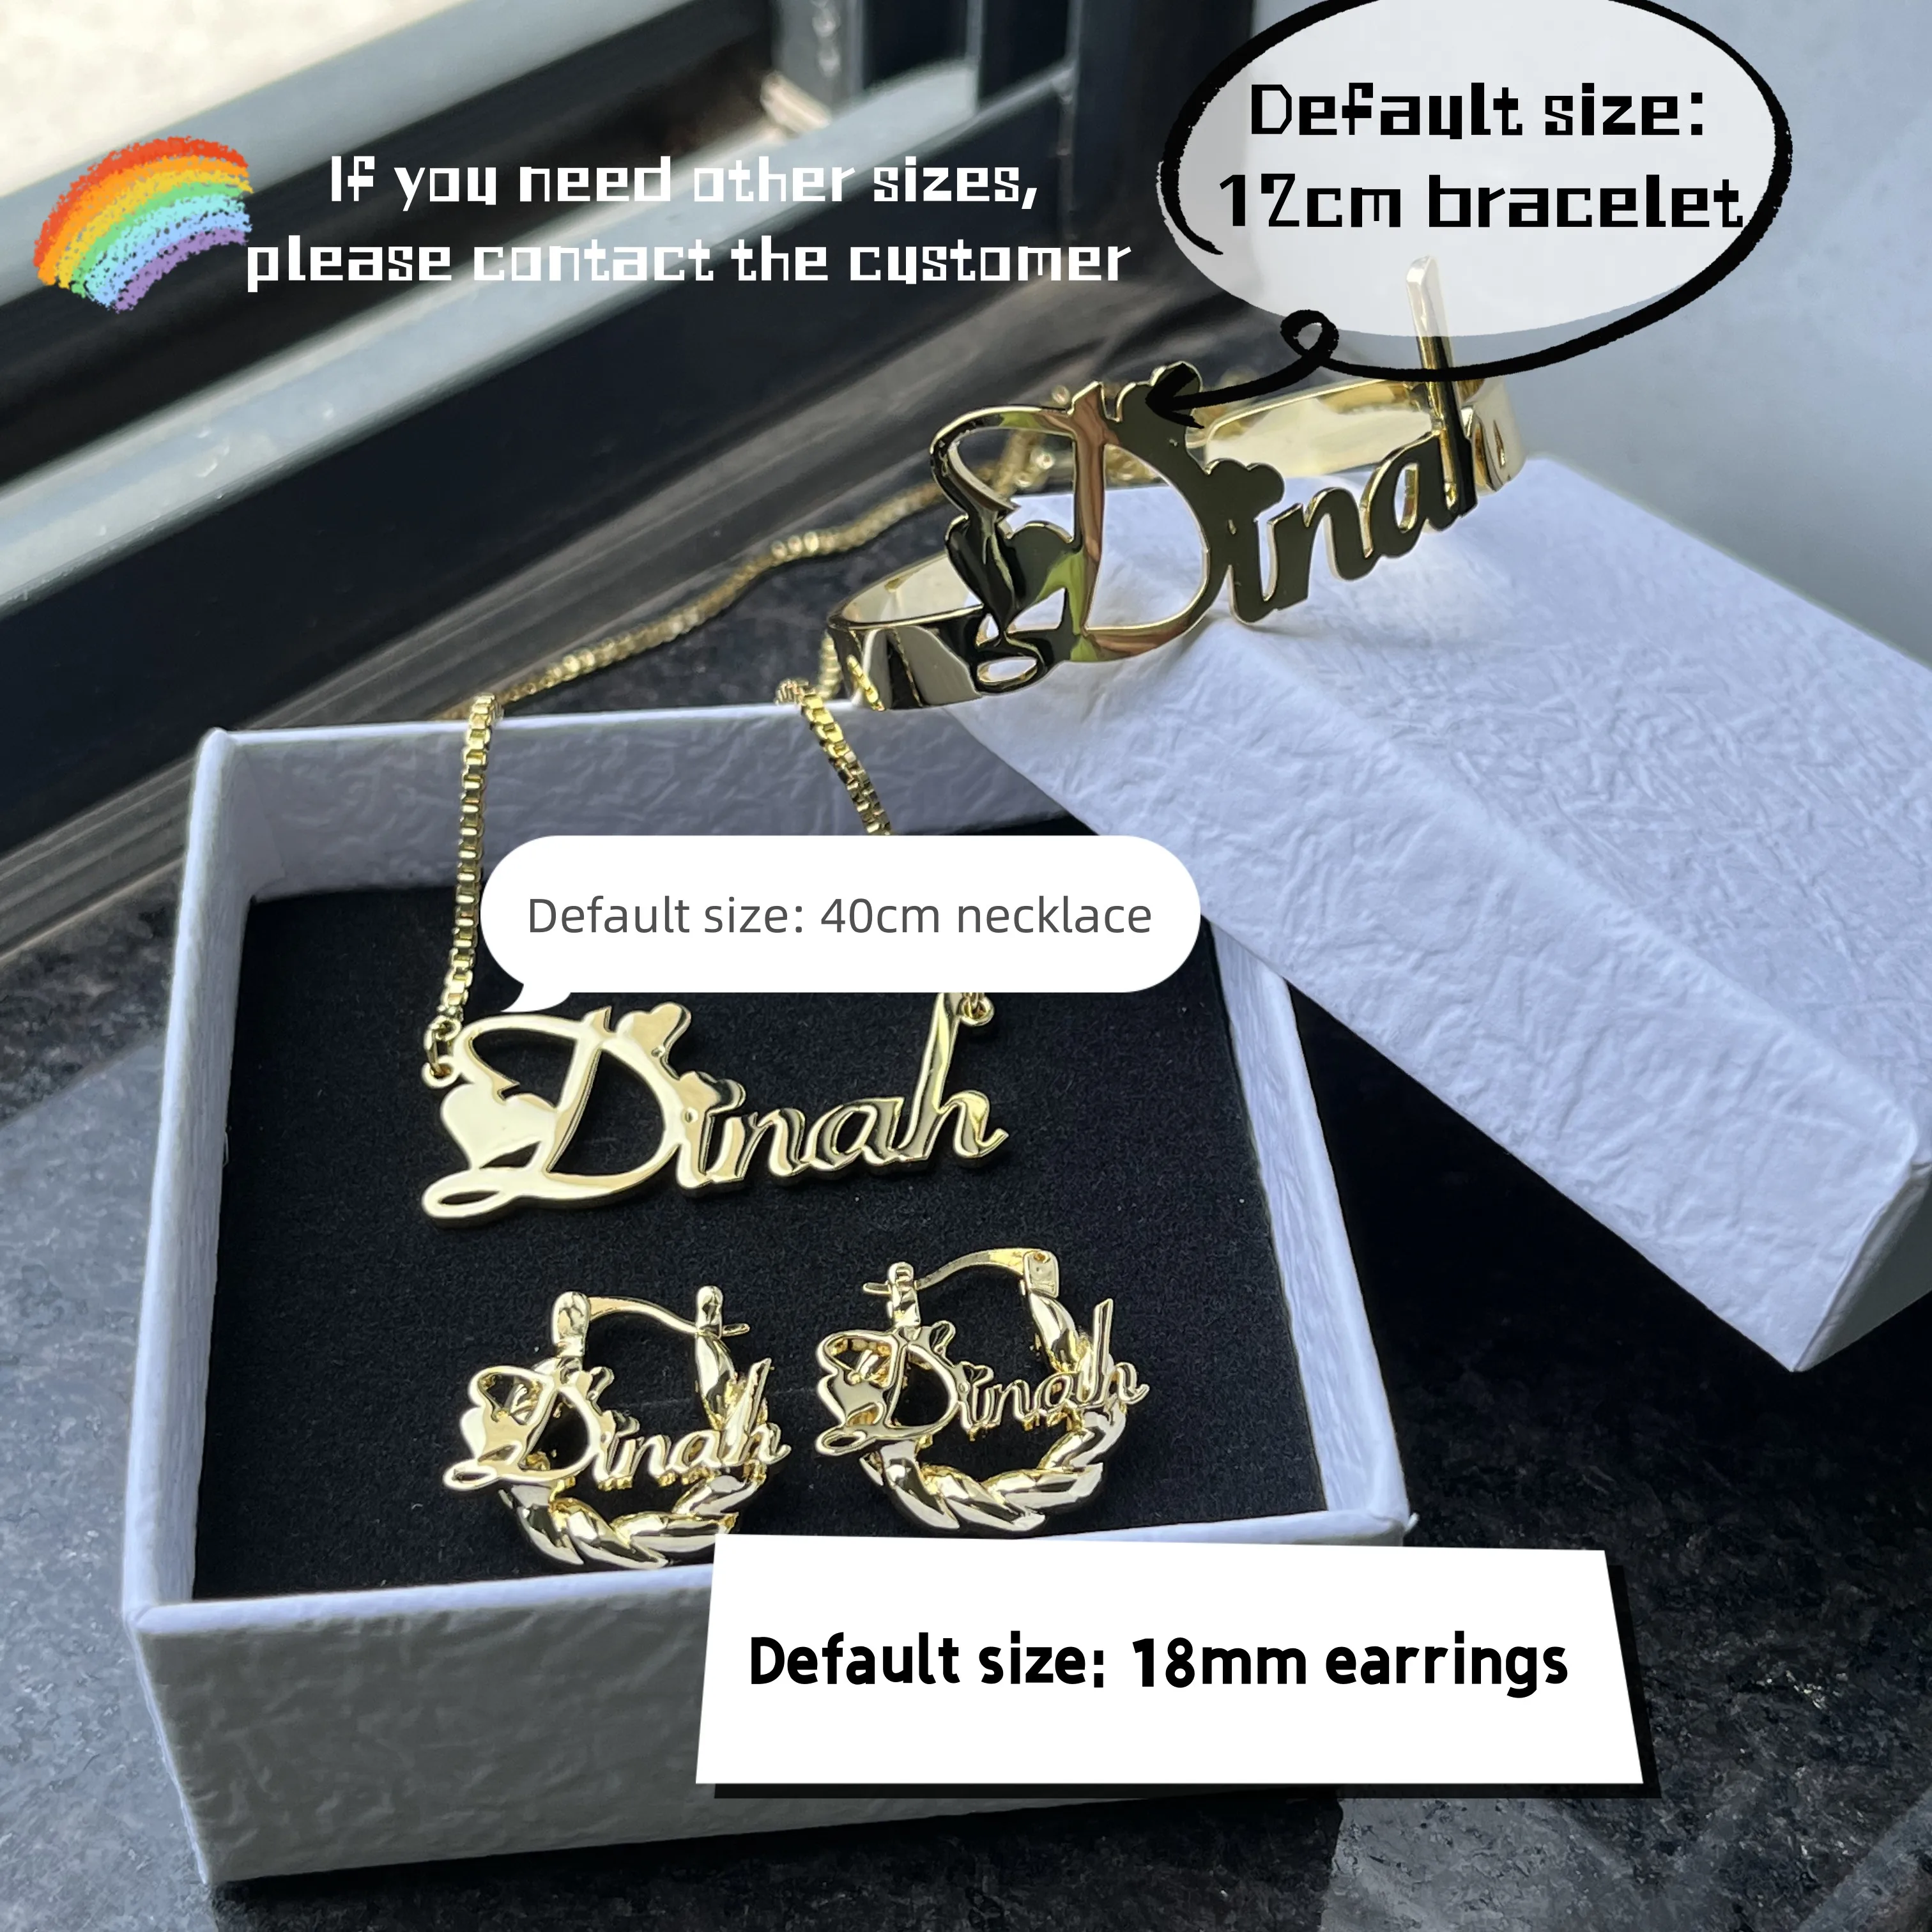 DUOYING-Conjunto de joyería con nombre personalizado, collar con letras personalizadas, brazaletes con nombre, Mini pendientes de aro de acero inoxidable, 18mm